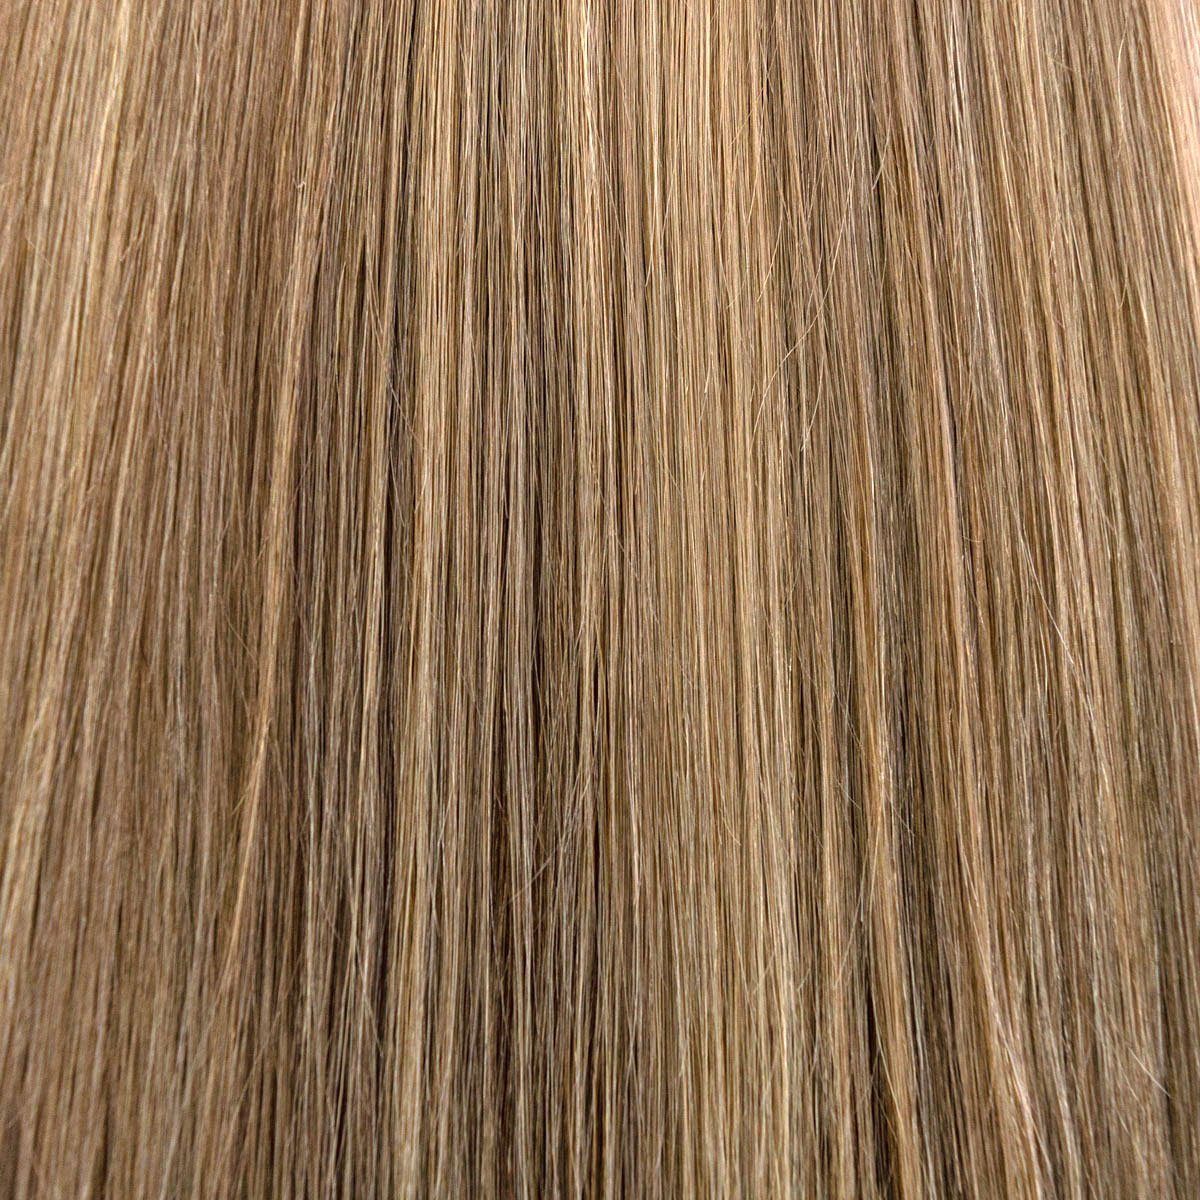 Global Extend Echthaar-Extension Haartresse #08/18 gesträhnt | Haarverlängerungen